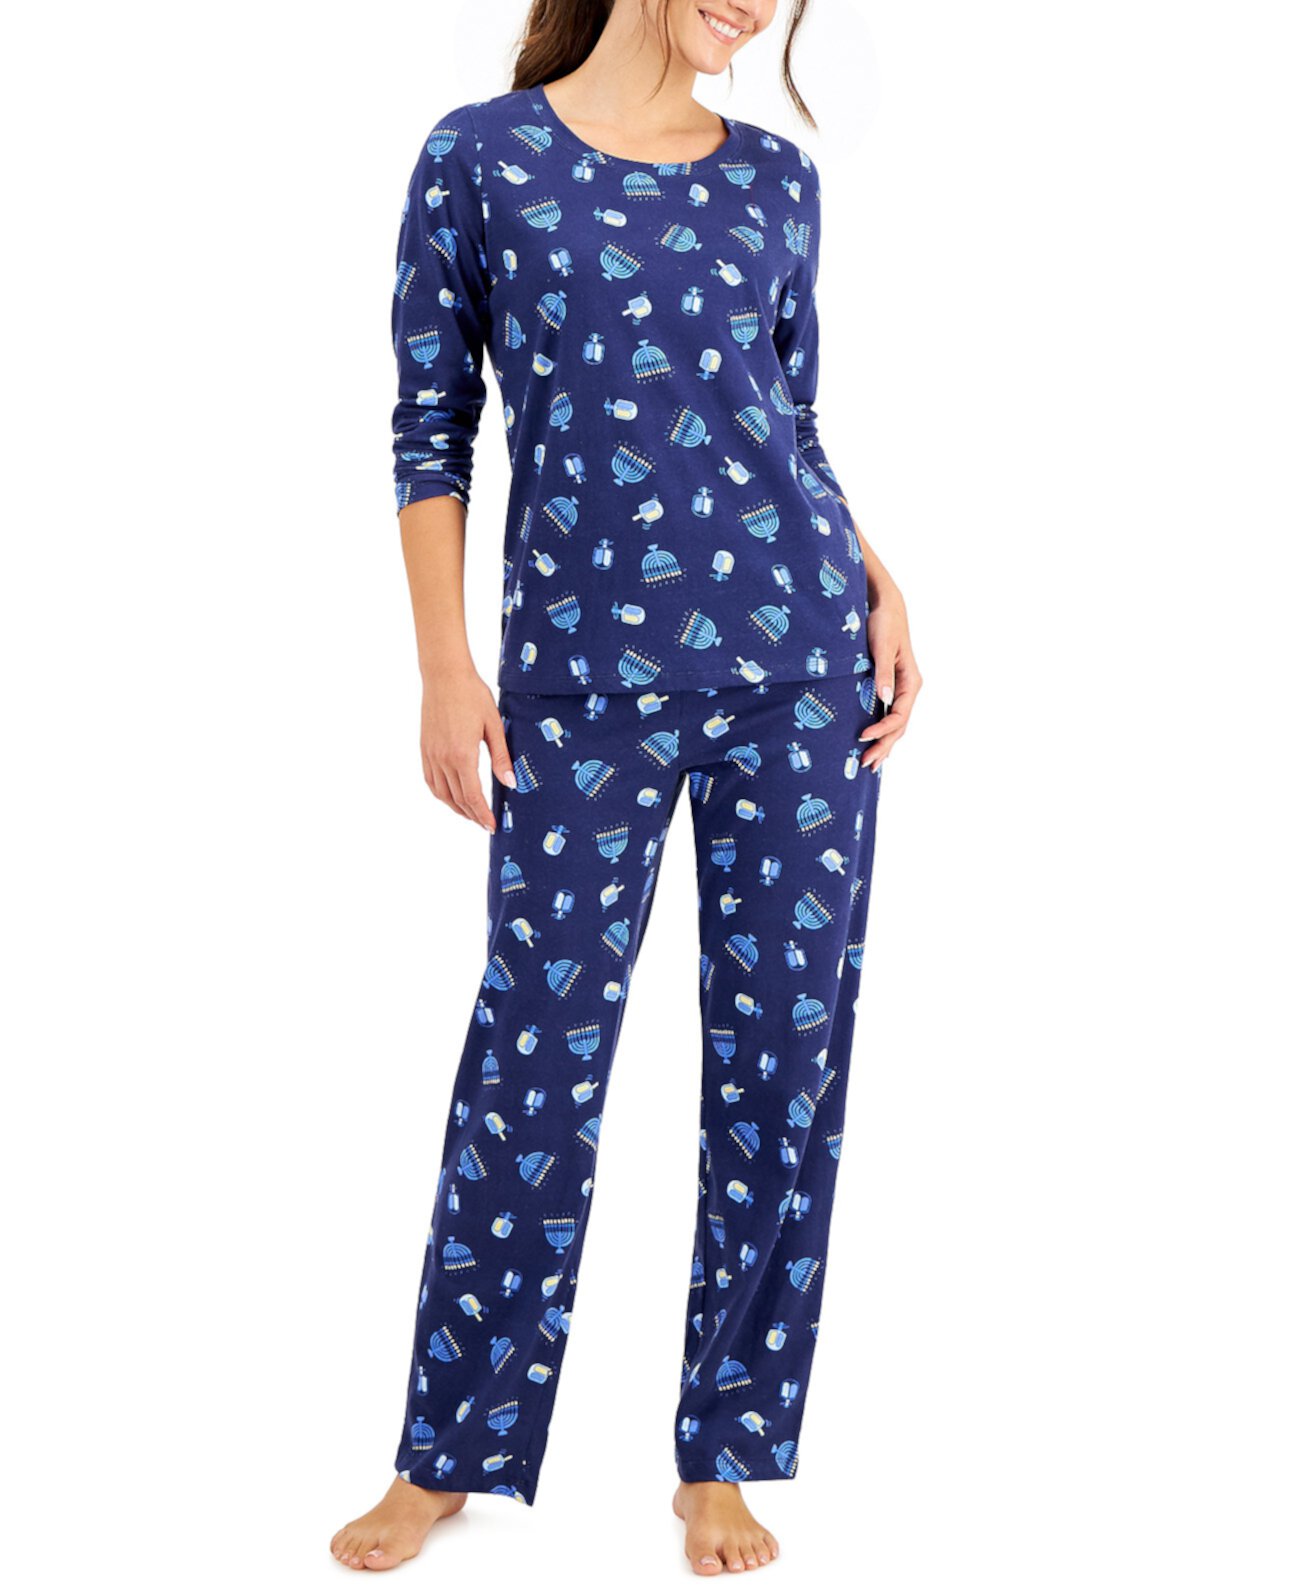 Подходящий женский семейный пижамный комплект для Хануки, созданный для Macy's Family Pajamas